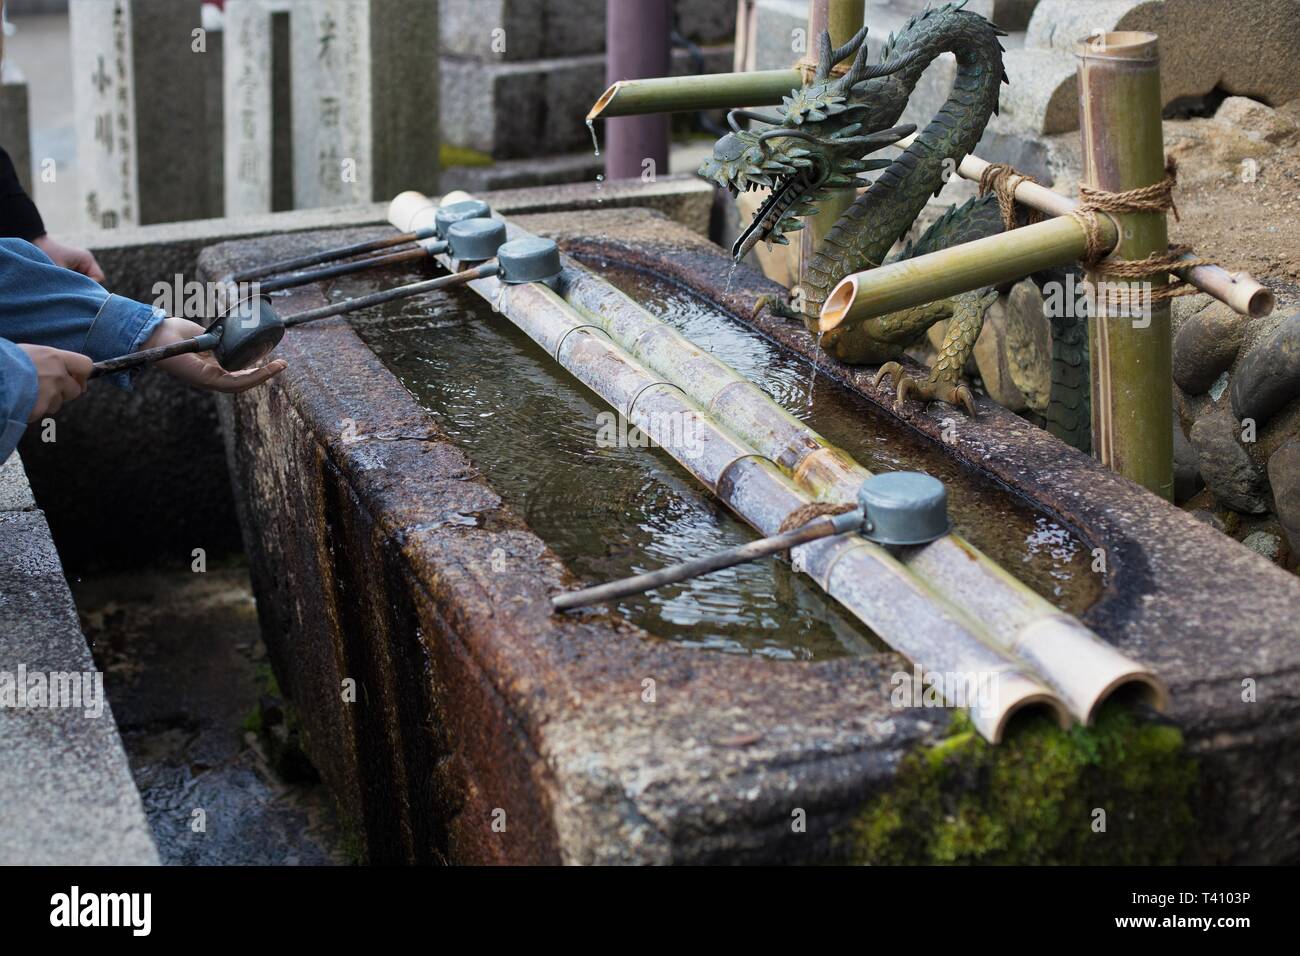 In prossimità di una persona lavare le mani in acqua significava per la purificazione, a Nara, Giappone. Foto Stock